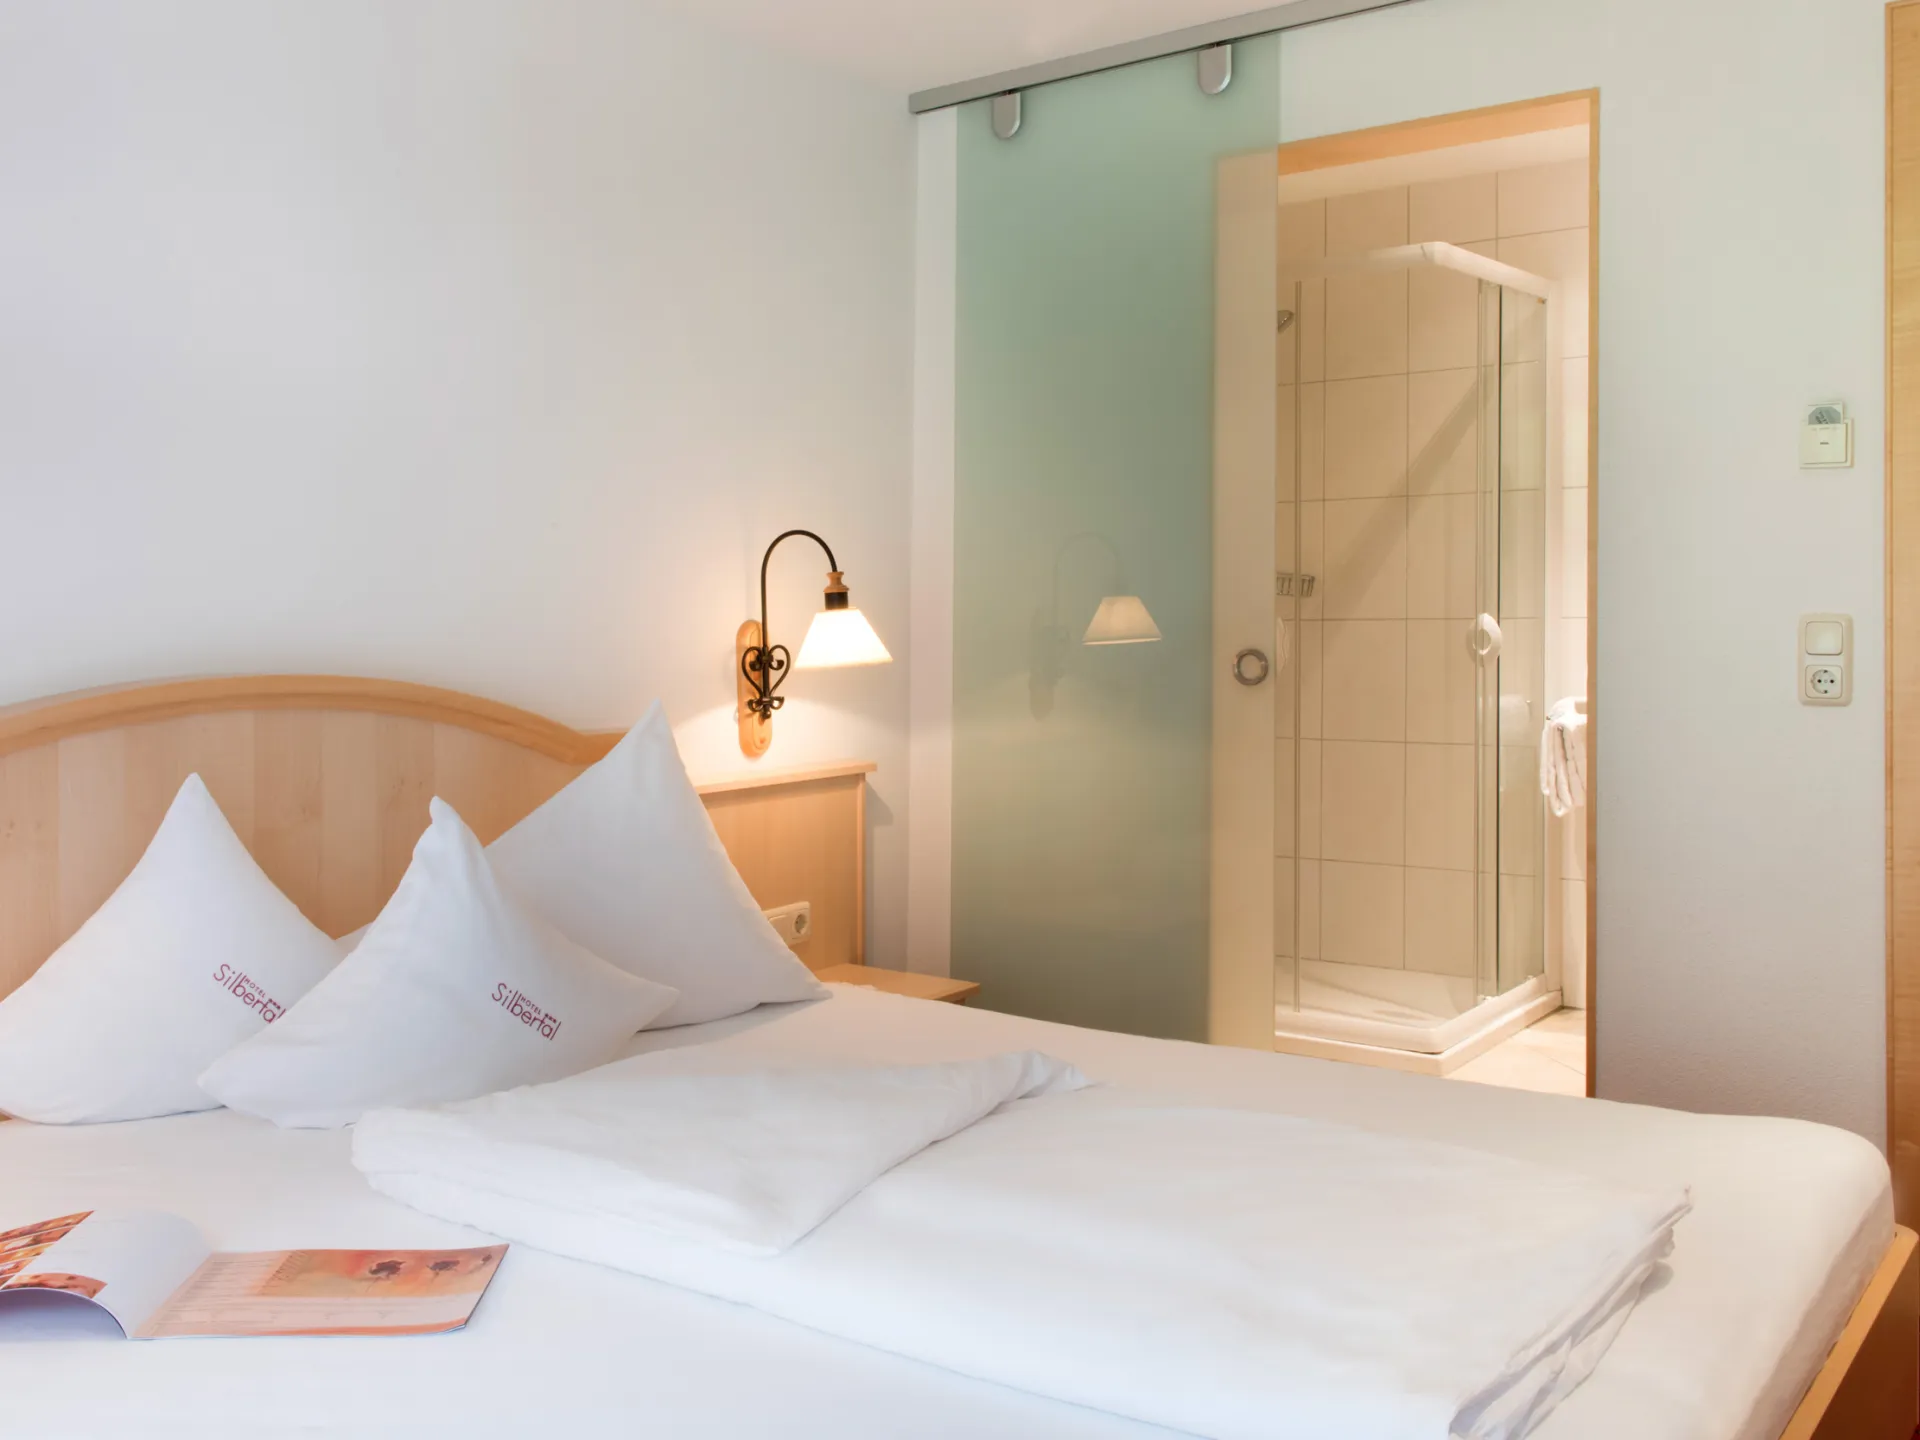 Hotel-Einzelzimmer mit Blick auf die Dusche, die durch eine stilvolle Glasschiebetür abgetrennt ist.